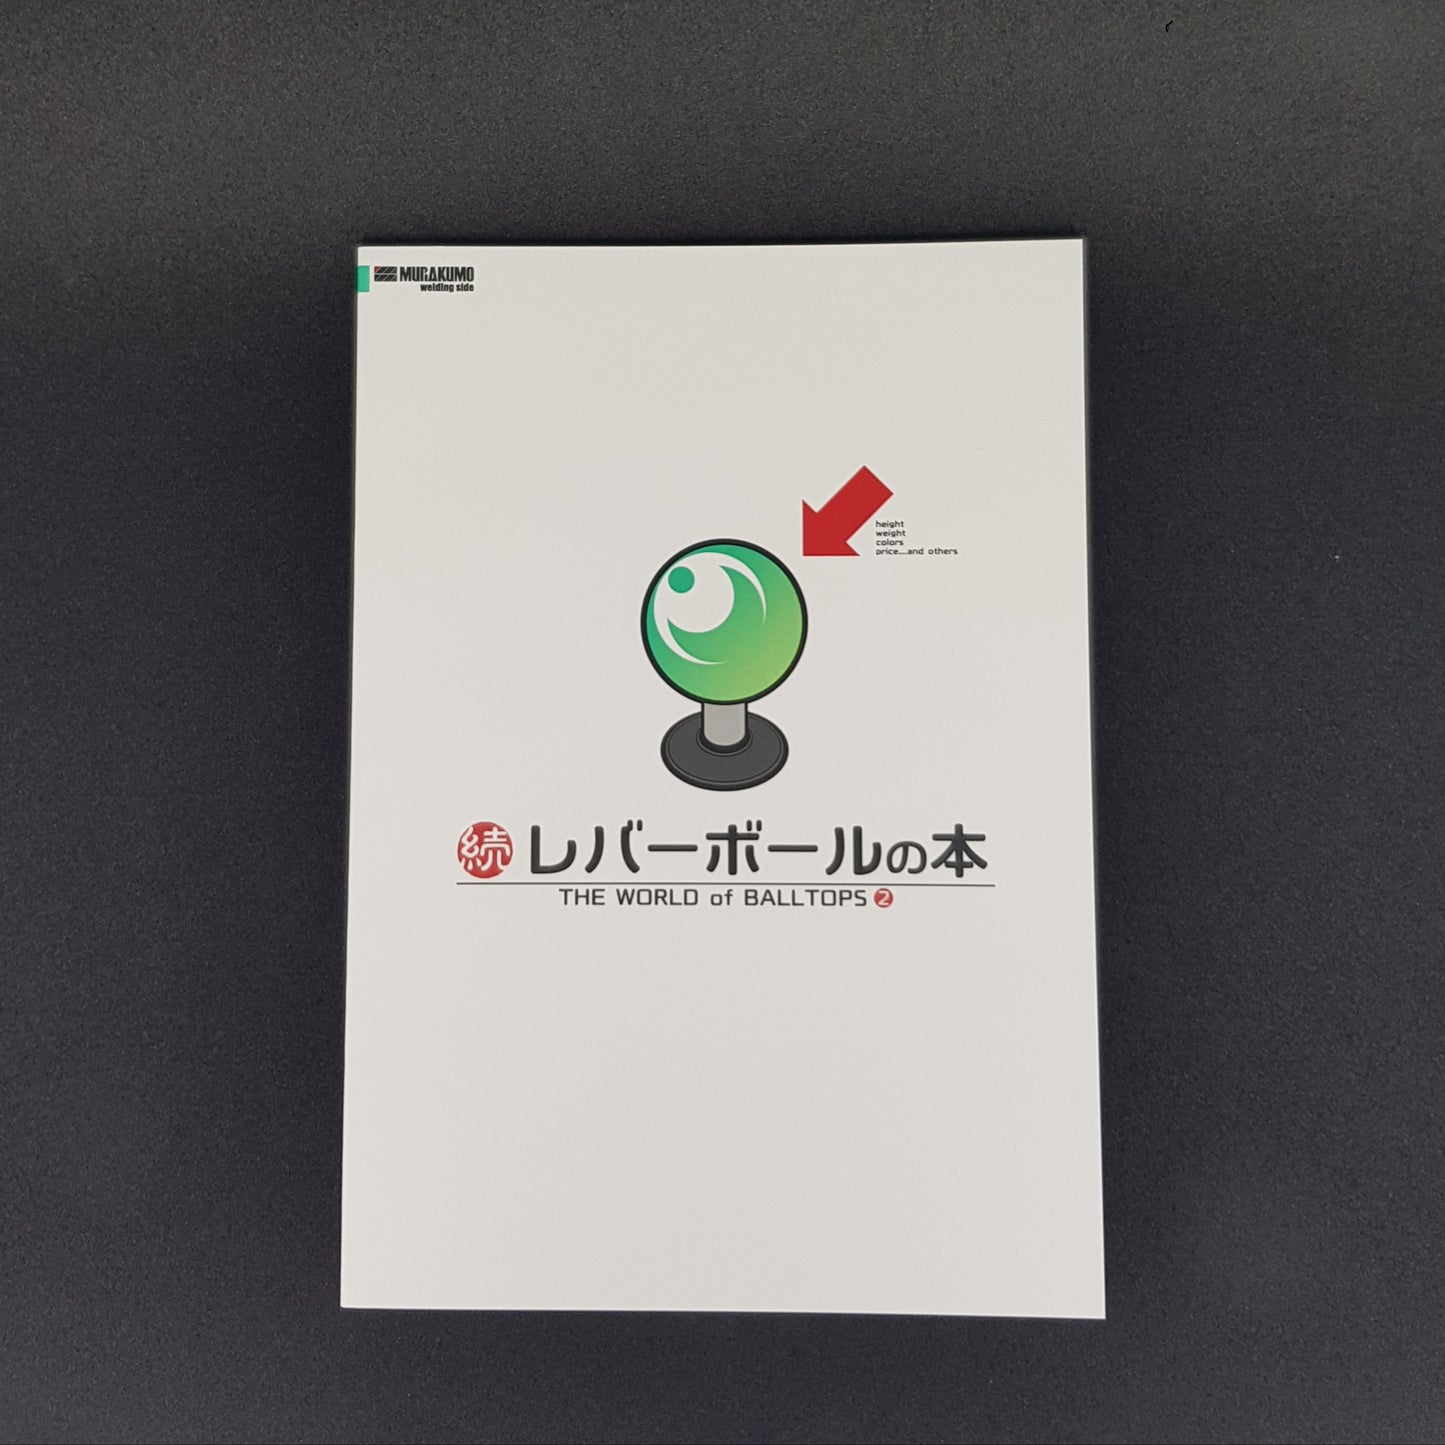 Murakumo Corp. The World of Balltops book (Volume 1 & 2)